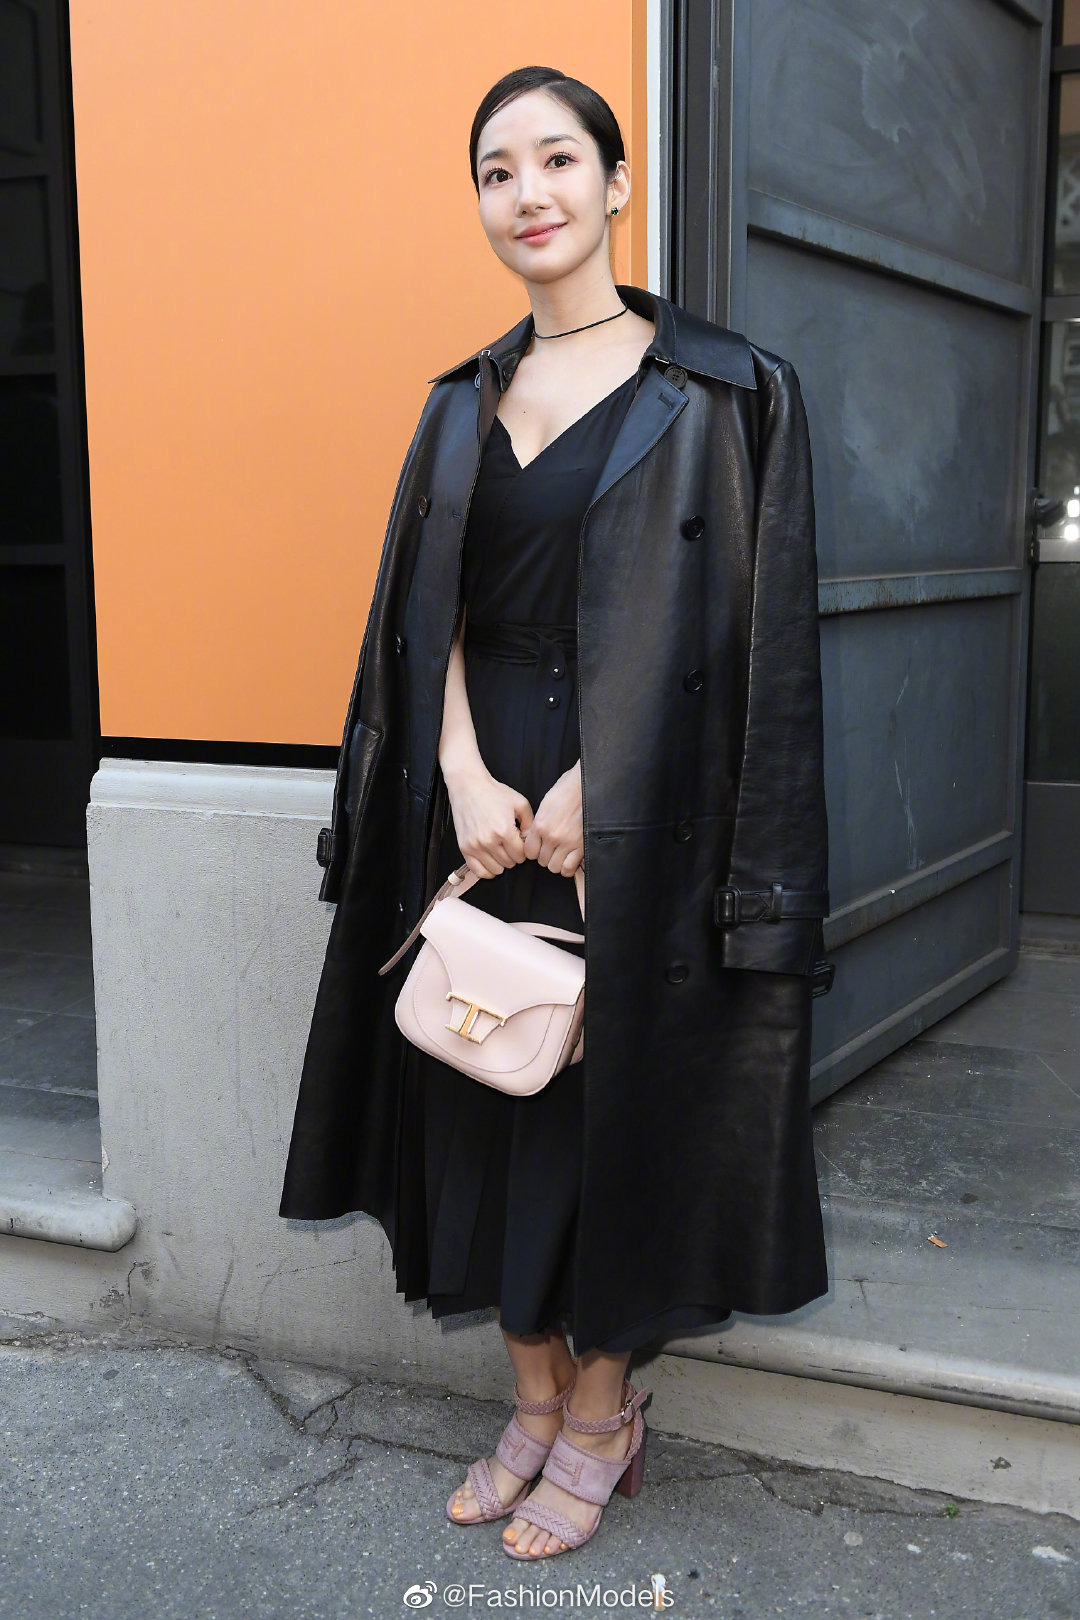 Milan Fashion Week: Park Min Young bỗng hóa một mẩu vì bộ cánh dìm dáng, Han Ye Seul diện váy sến nhưng vẫn đẹp - Ảnh 1.